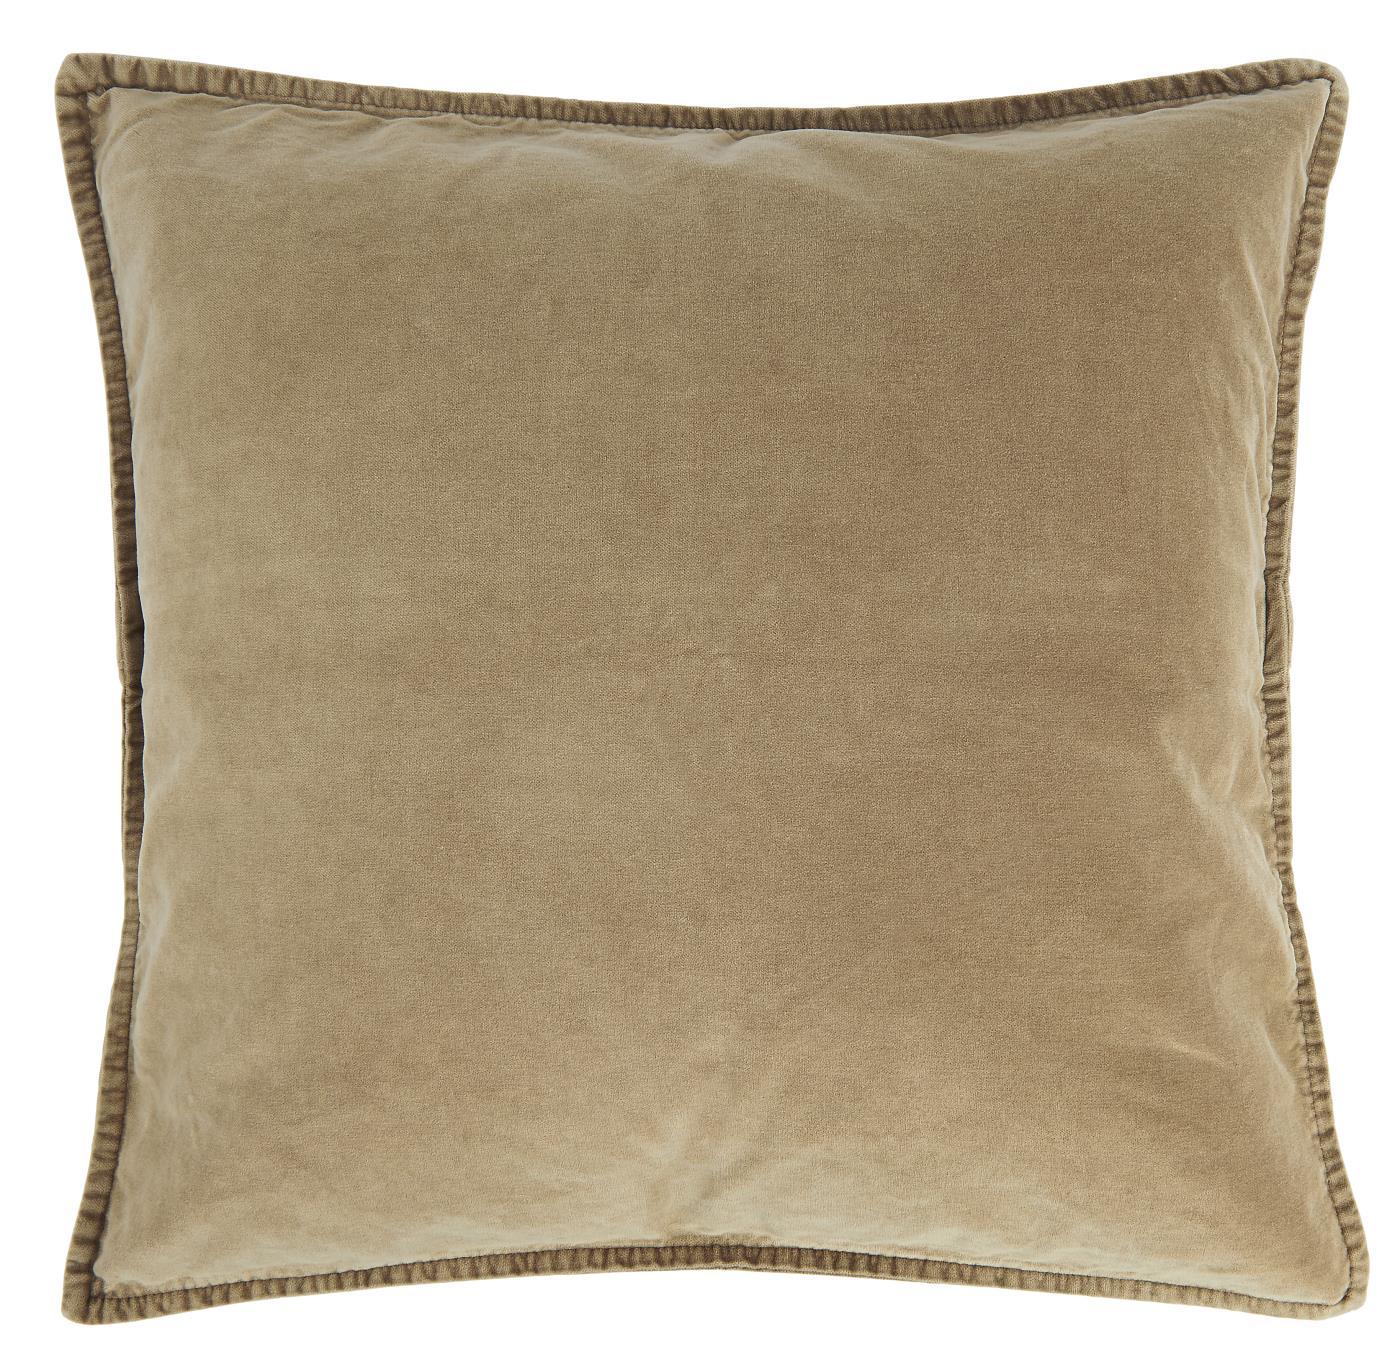 Cotton Velvet Cushion Cover - Cognac